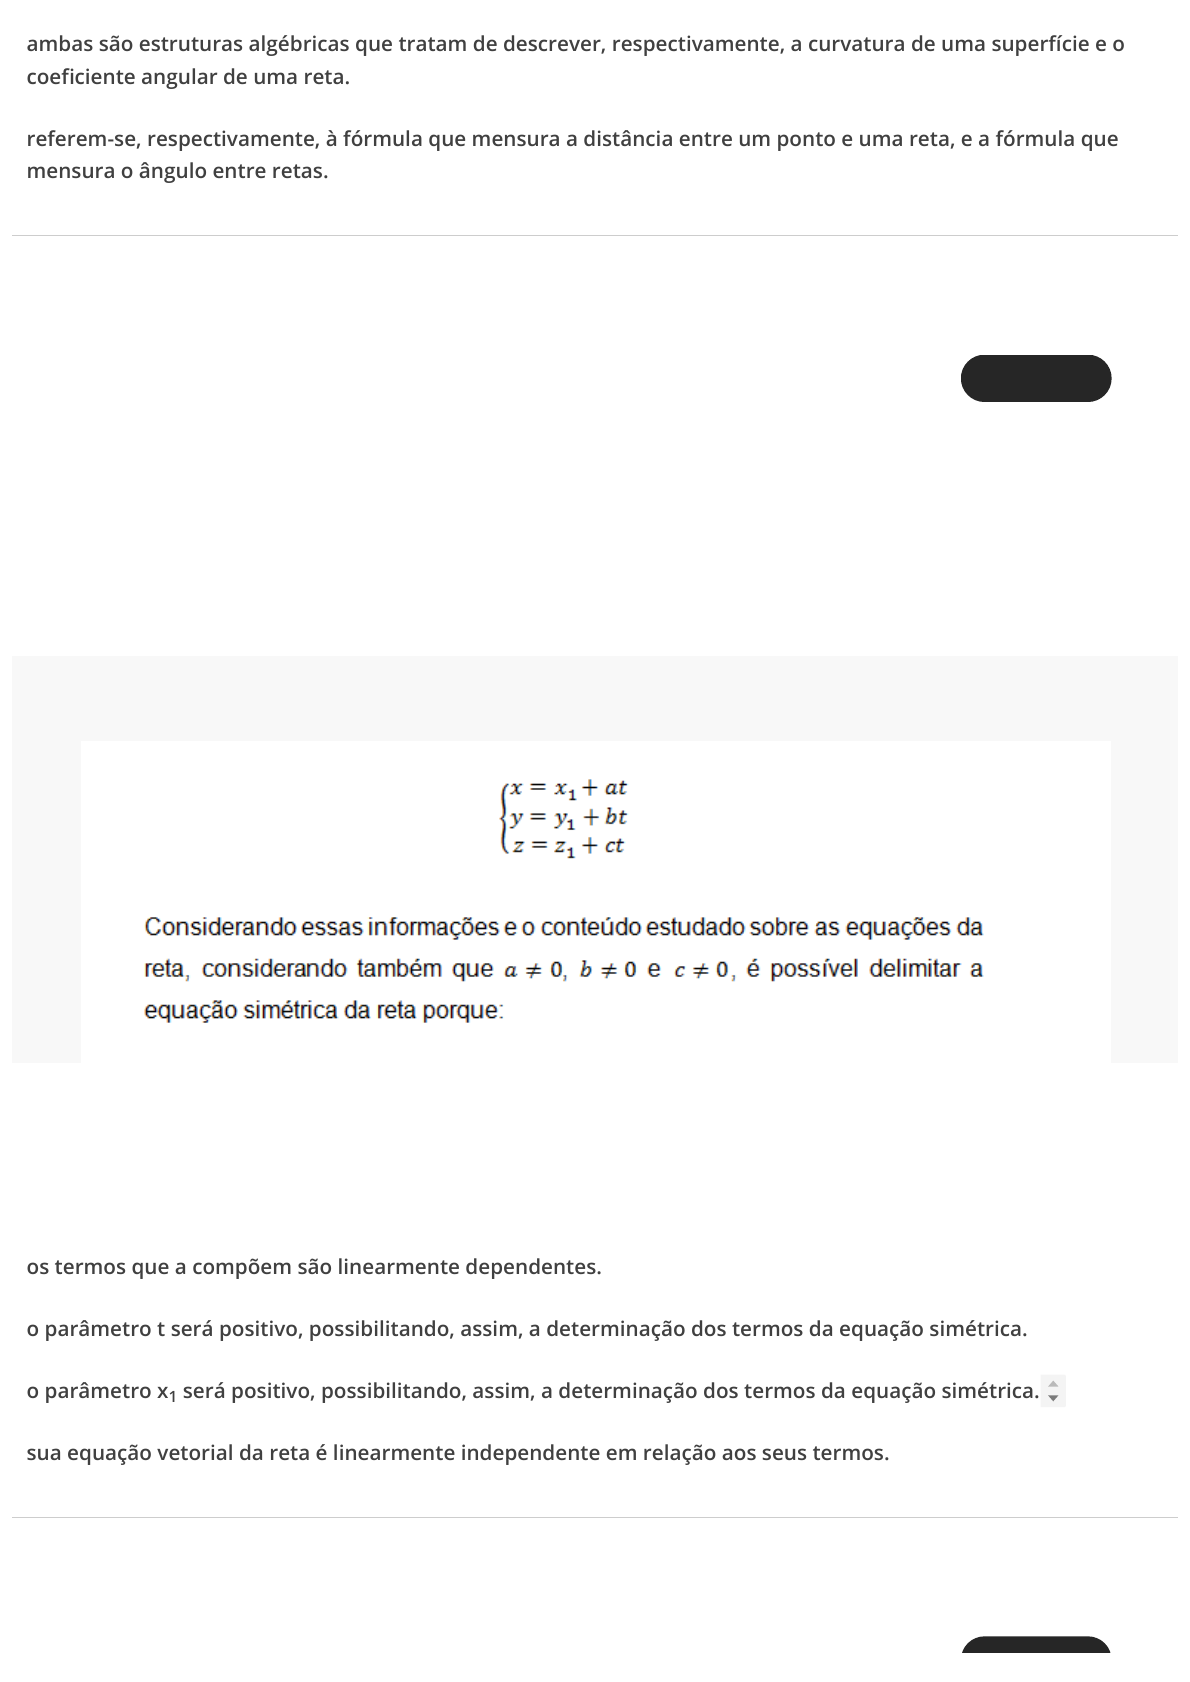 Quiz matemático 16 - Equação e seus elementos  Google formularios,  Matemático, Tecnologia da informação